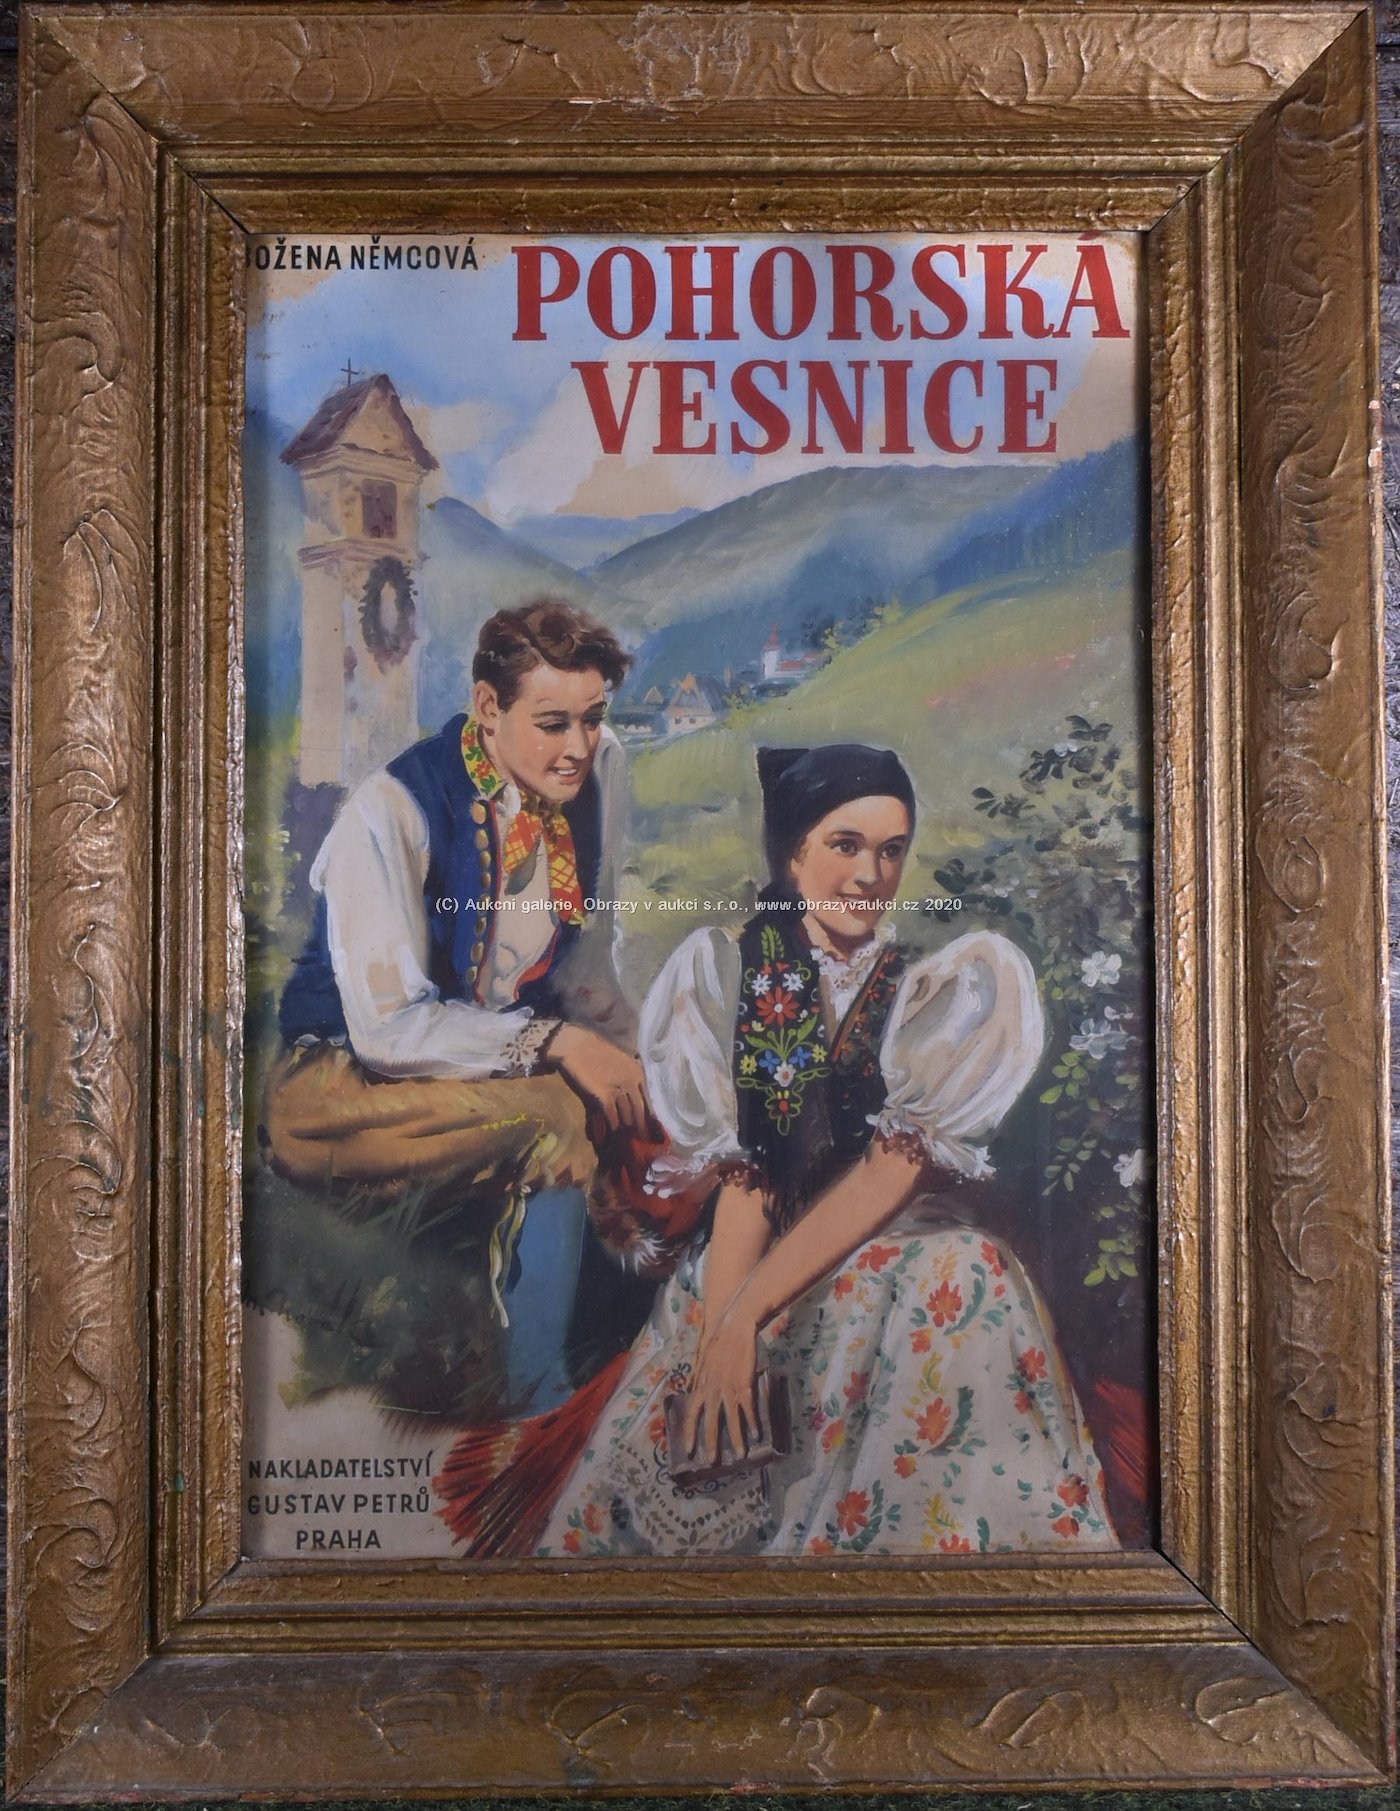 M. Novák - Soubor 7 návrhů plakátů